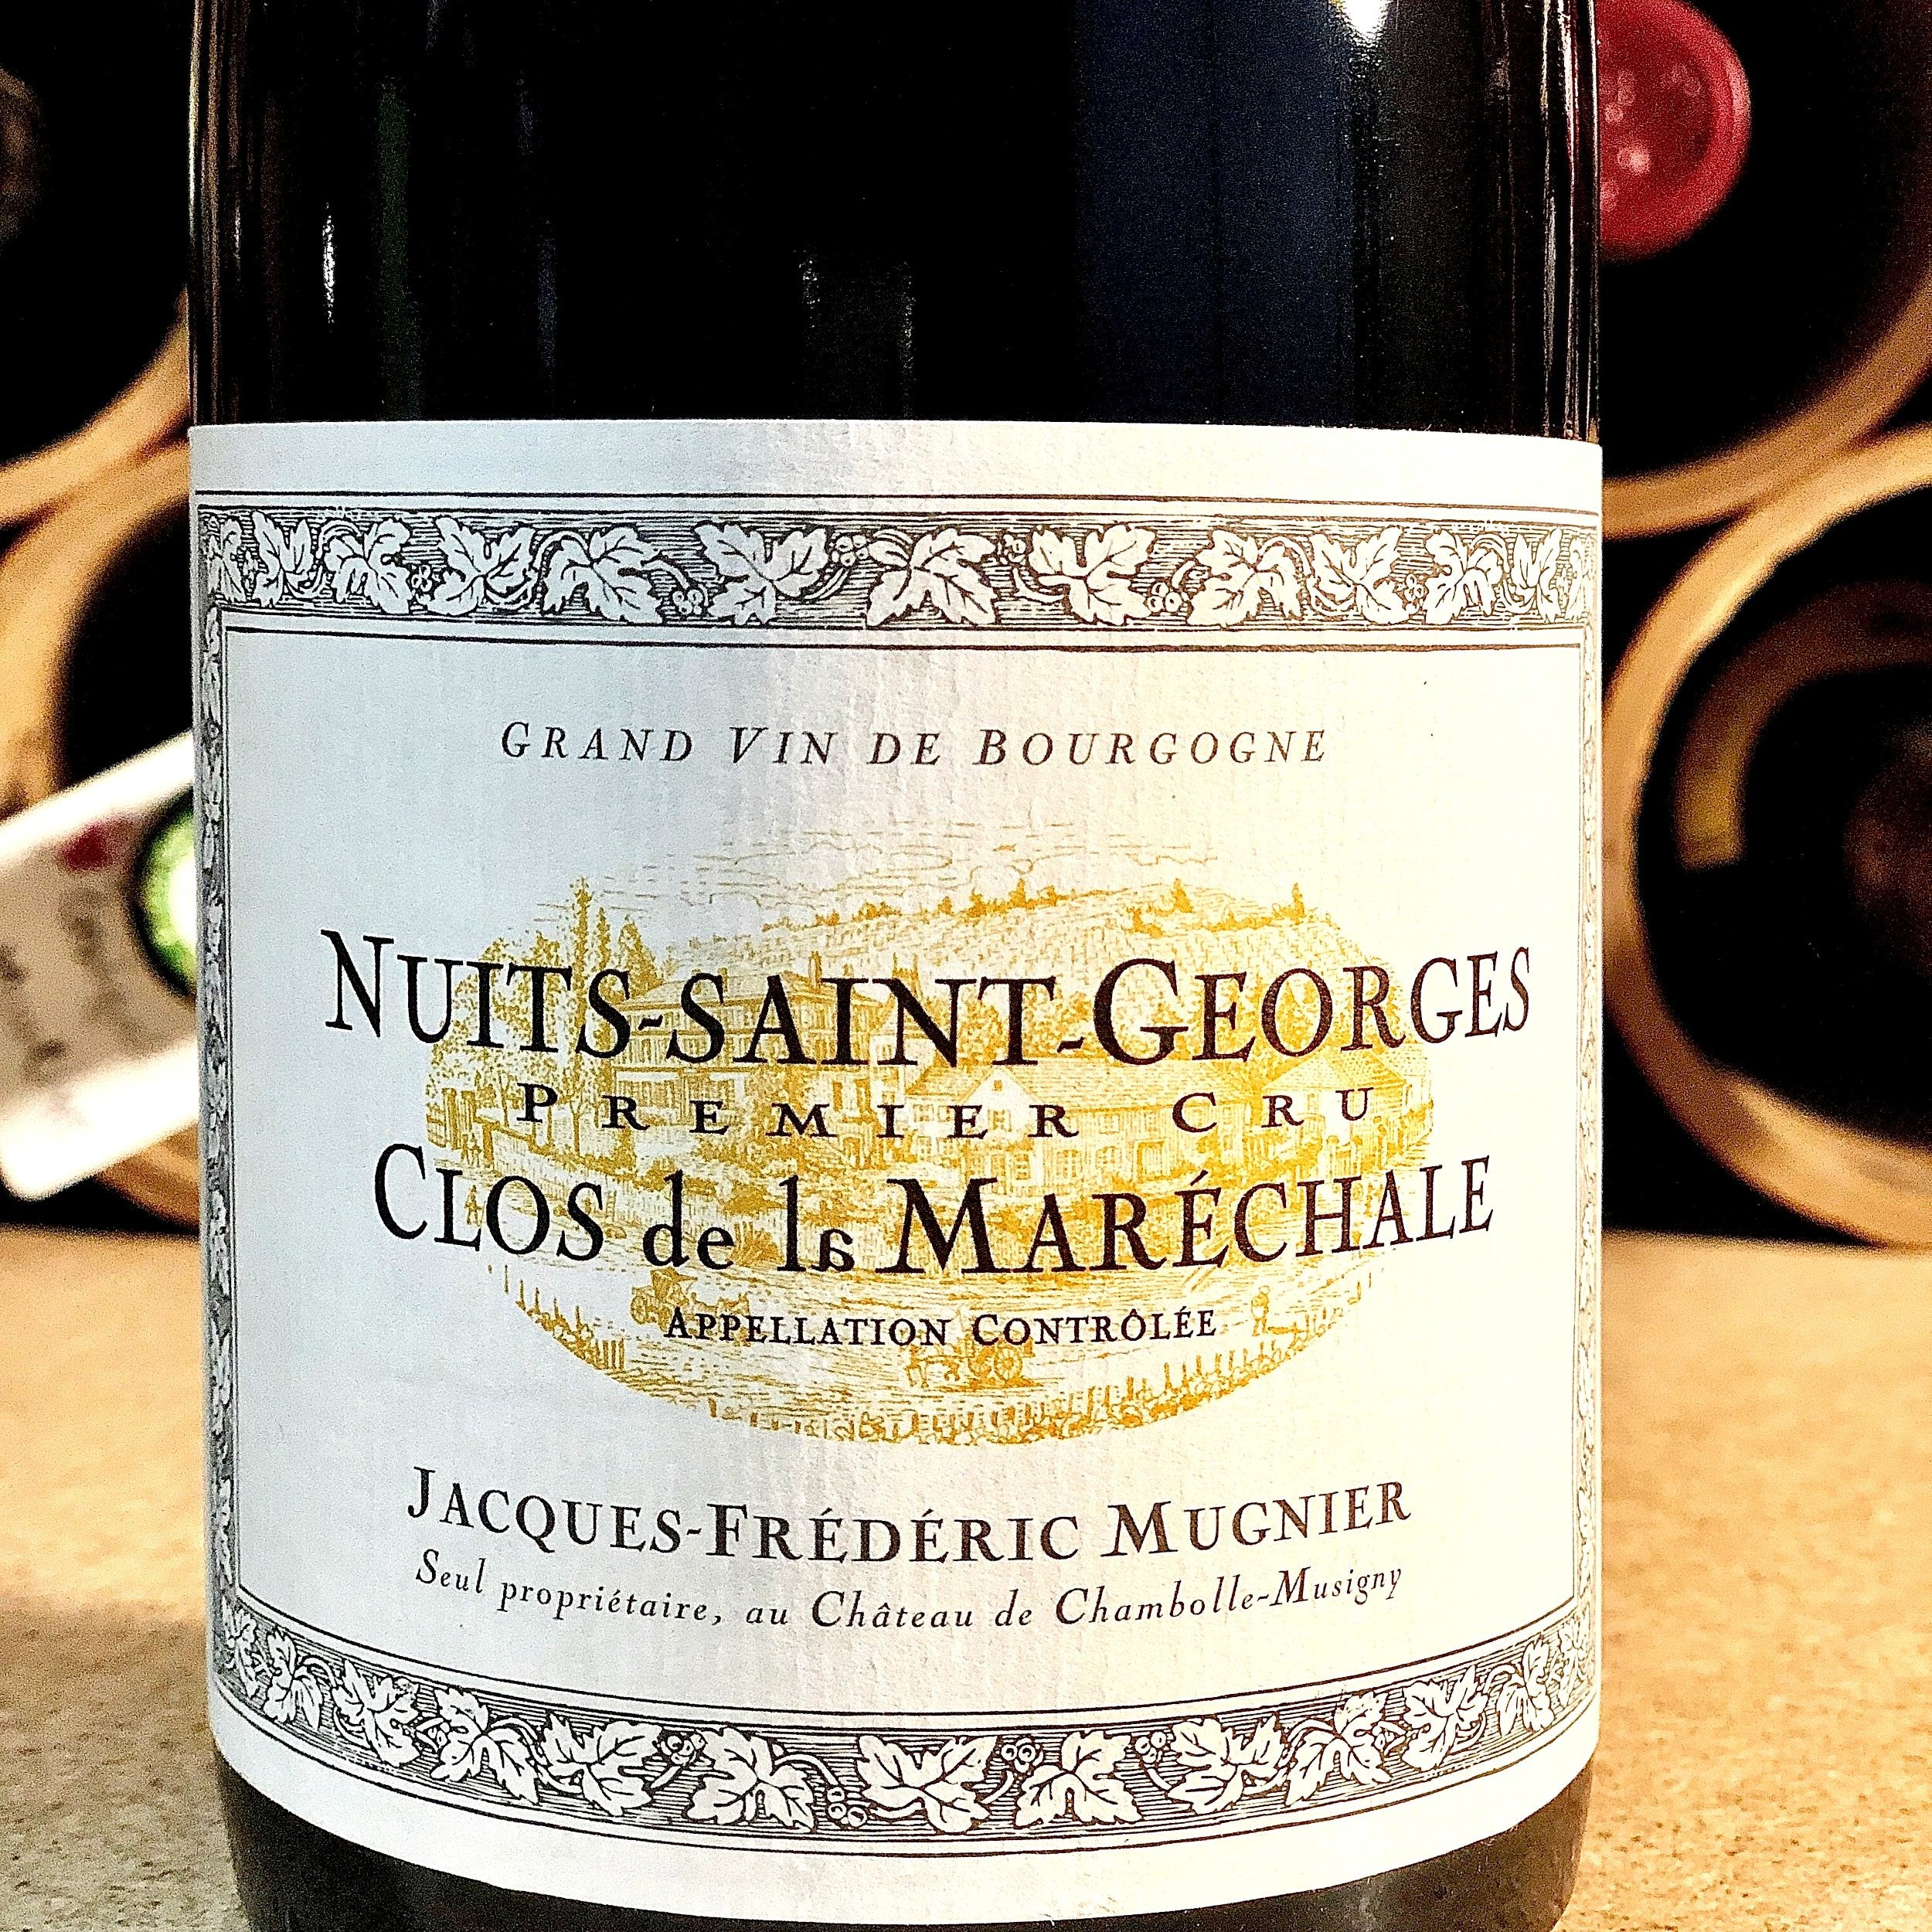 Jacques-Frederic Mugnier, Nuits St. Georges, Clos de la Marechale (rouge) 2014